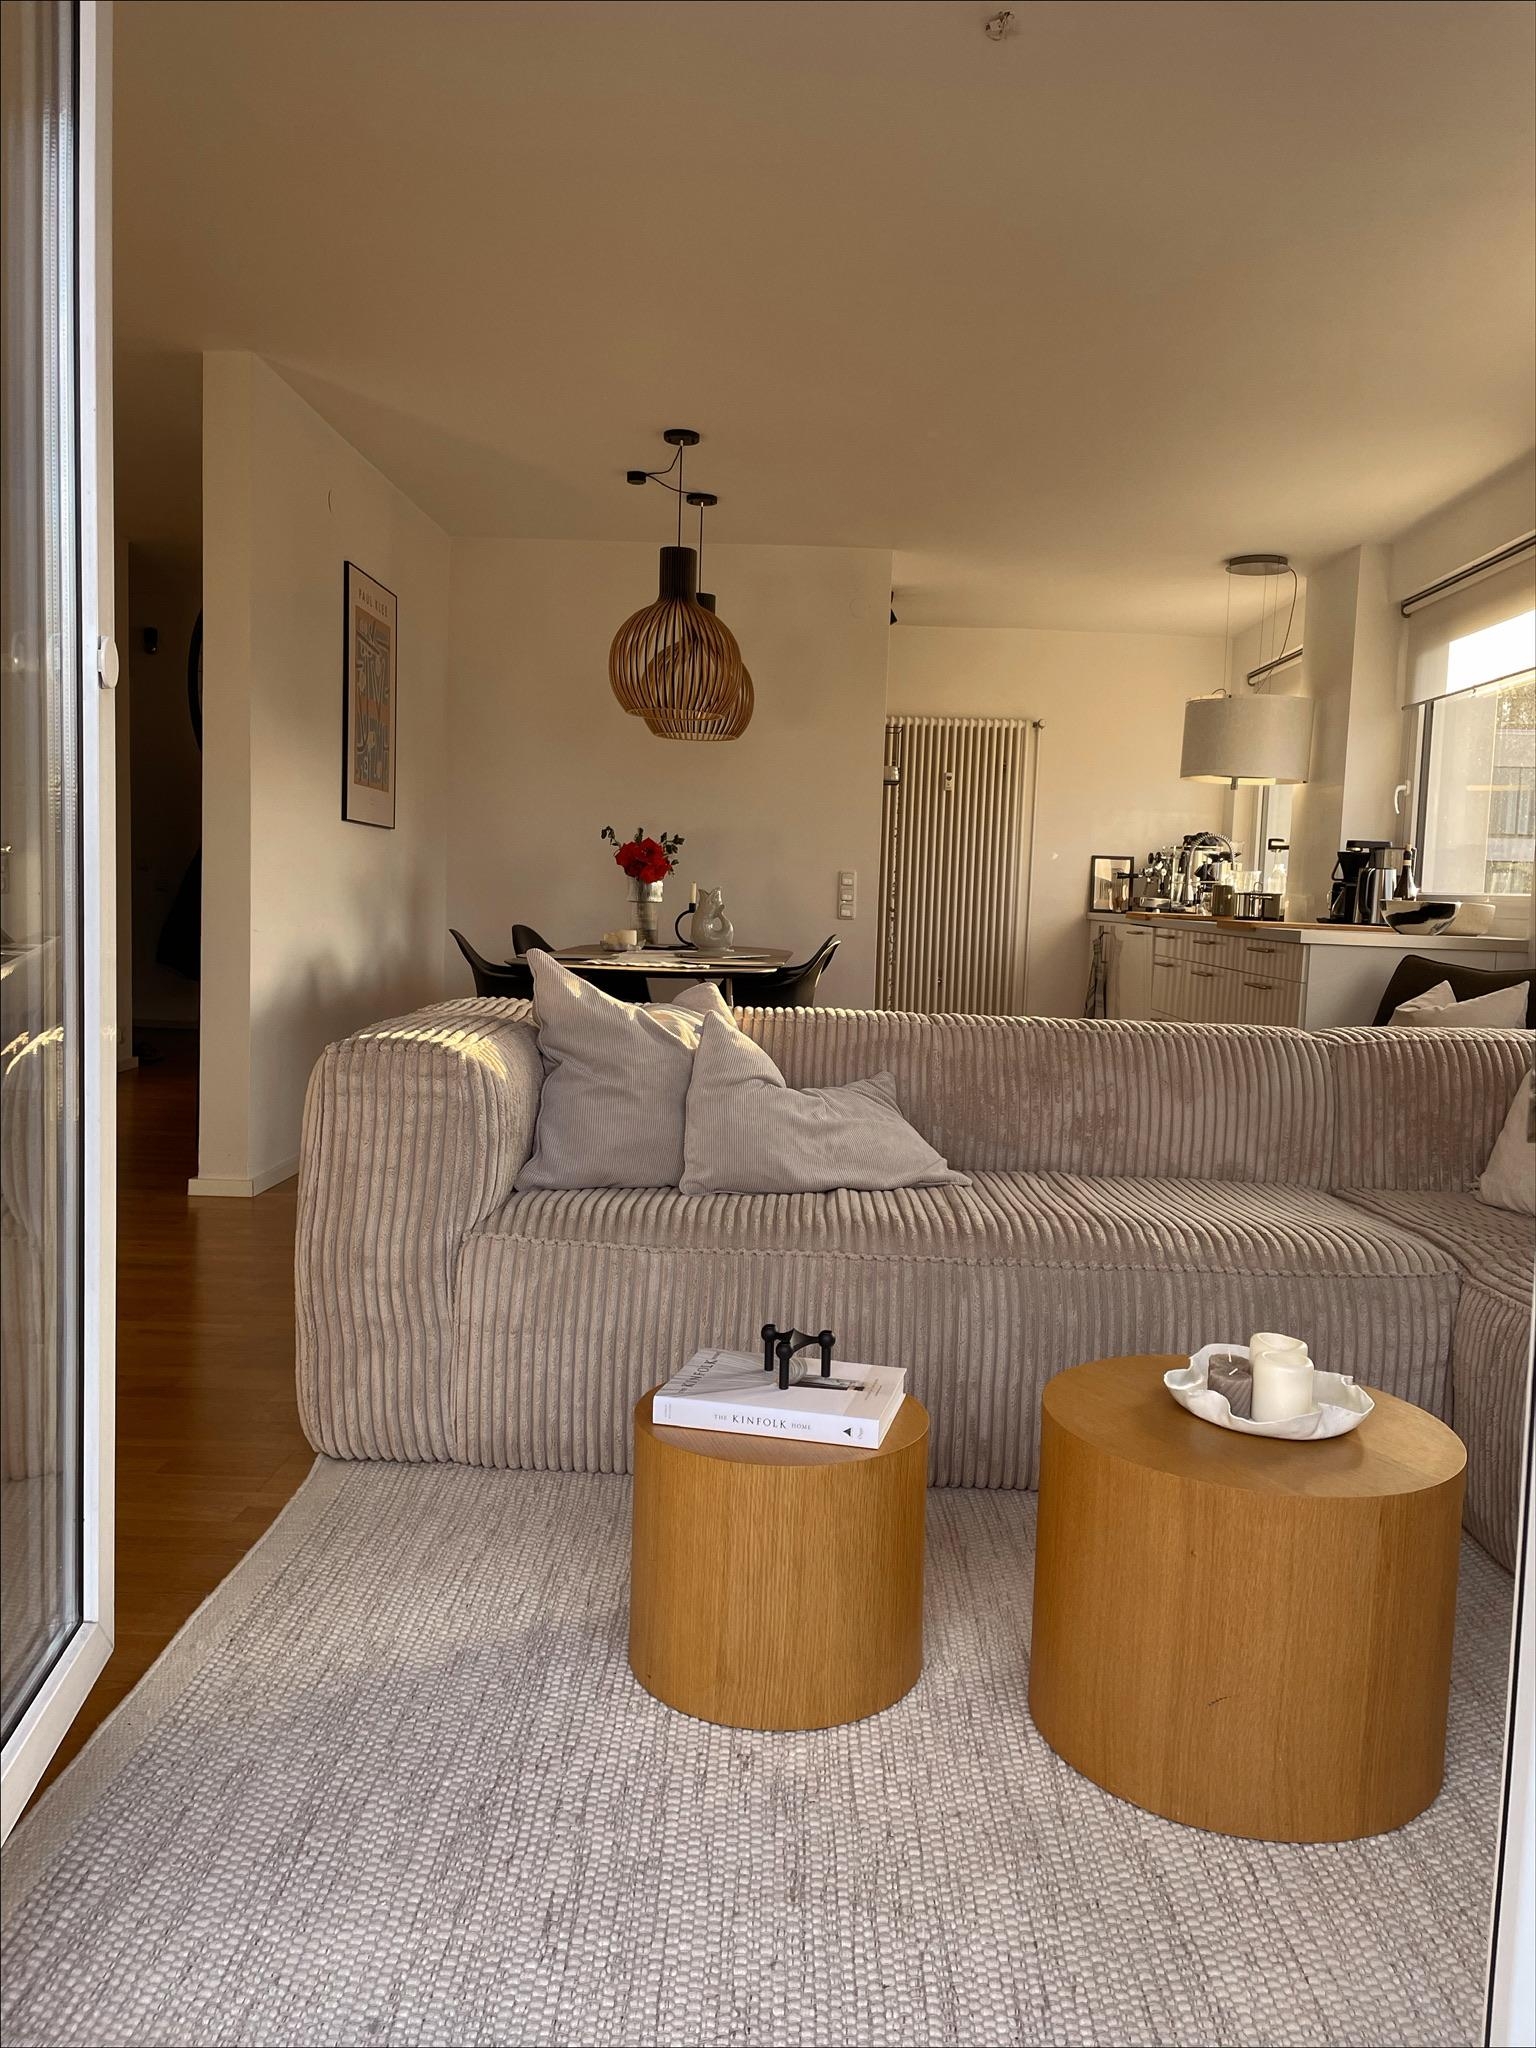 Liebster Blick ins Wohnzimmer. 🤍

#couchstyle #couchmagazin #wohnzimmer #hygge